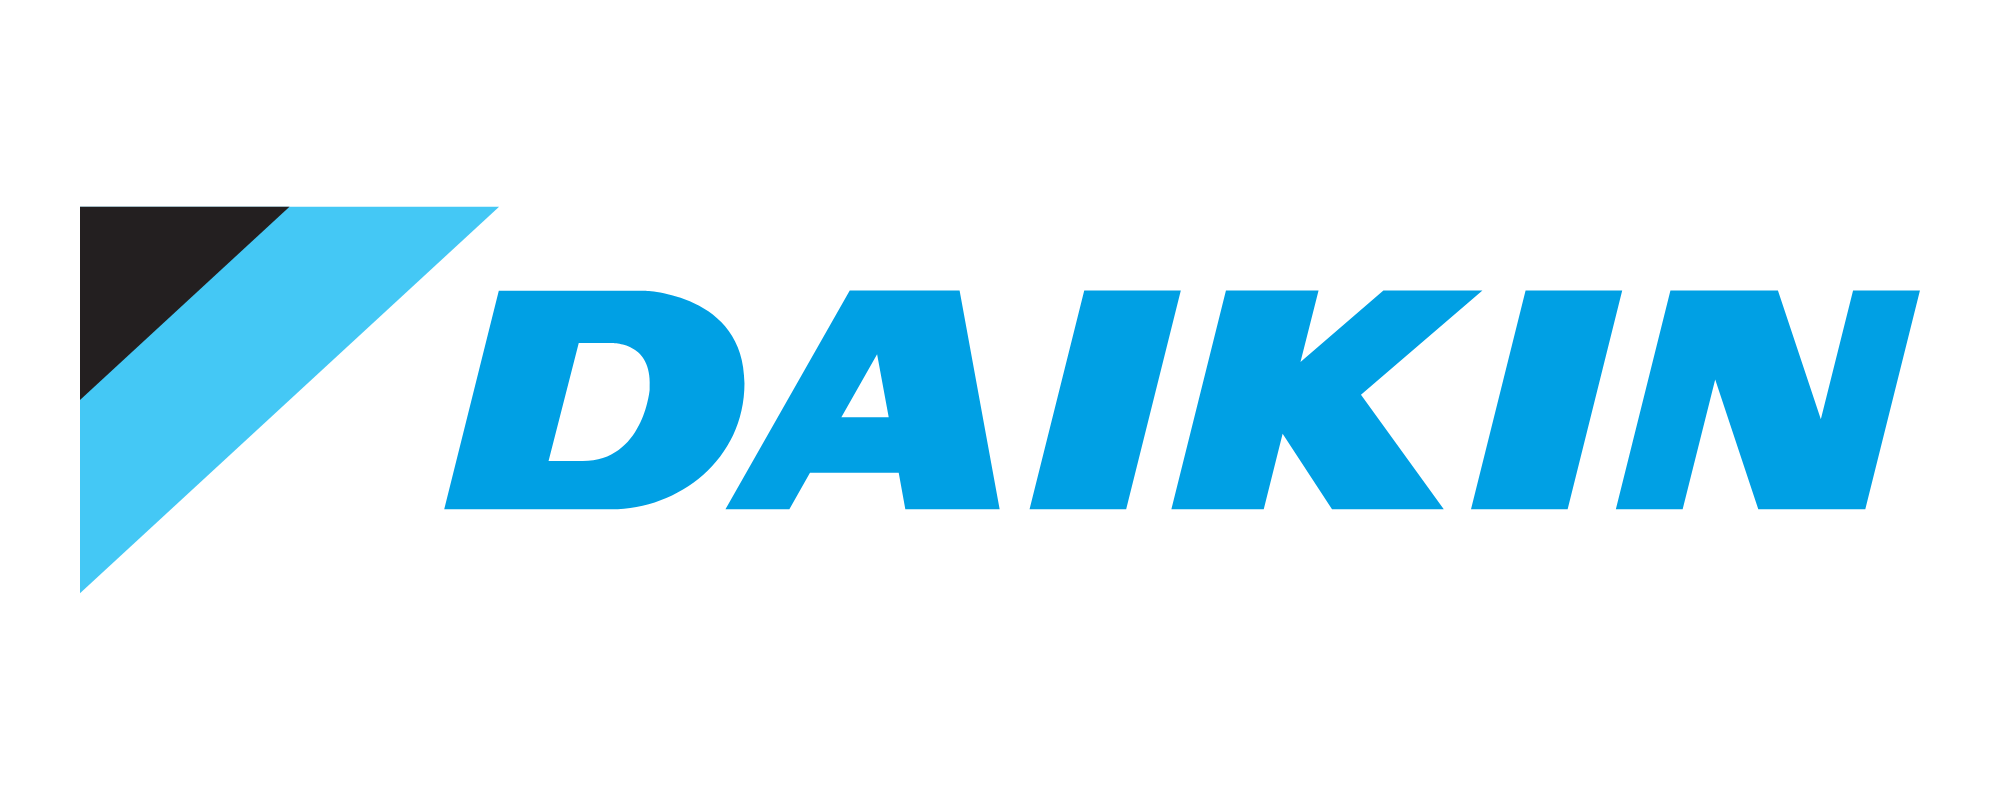 daikin-logo